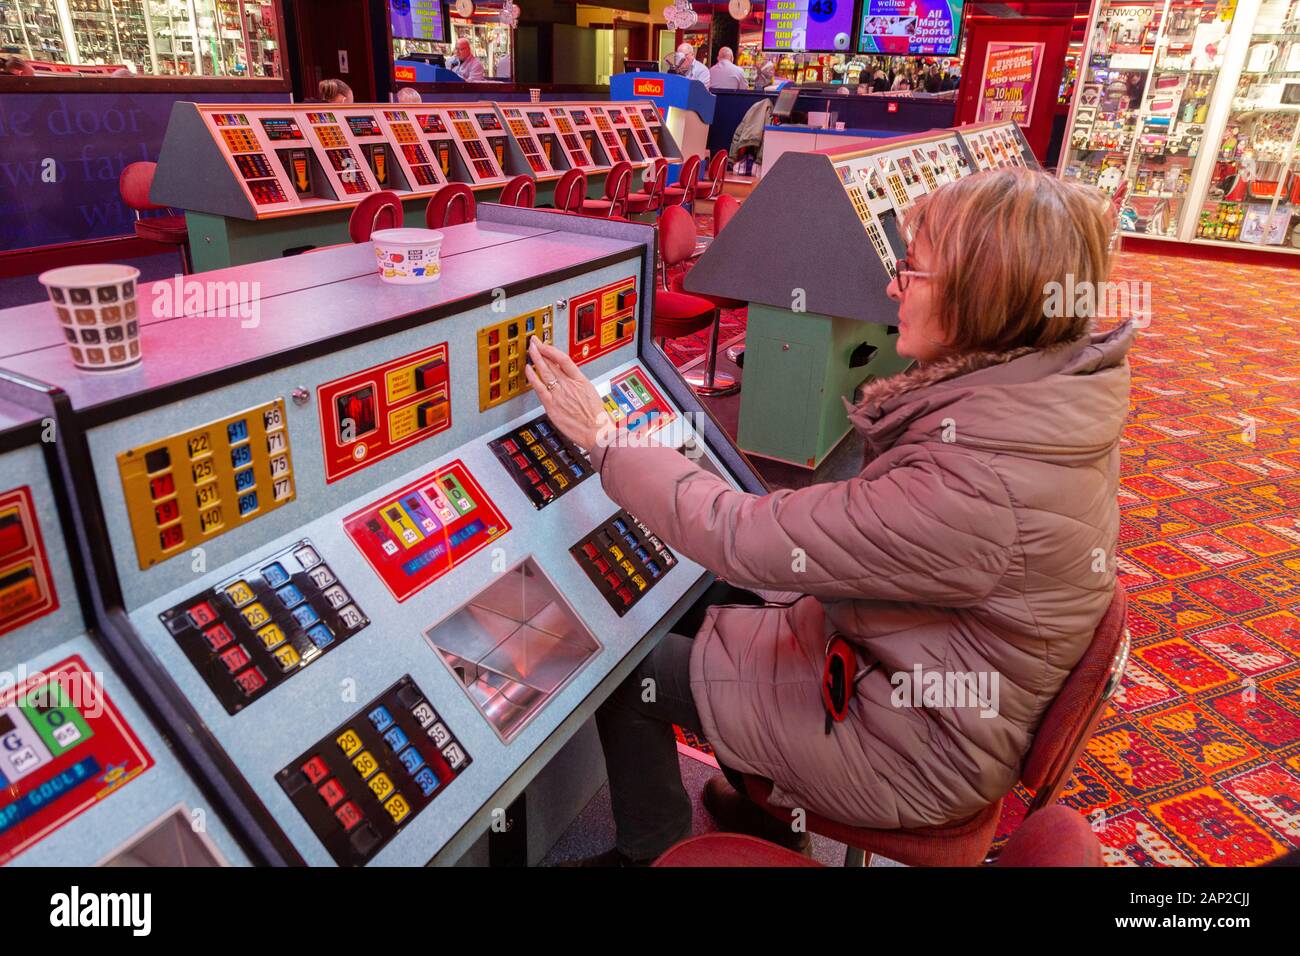 Bingo UK; a woman playing bingo, Skegness amusements, Skegness Lincolnshire UK Stock Photo